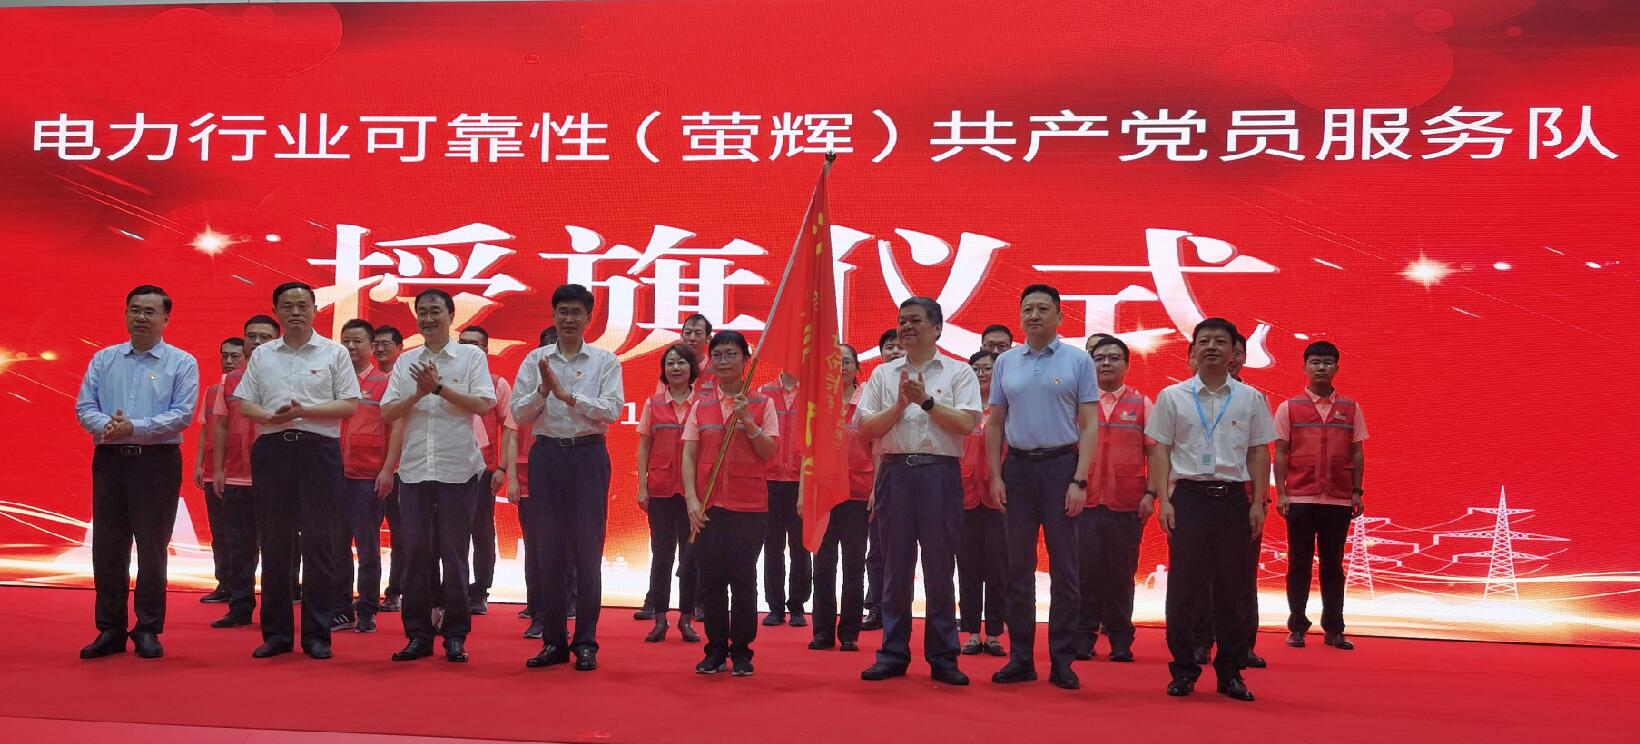 首支电力行业层面的共产党员服务队正式成立